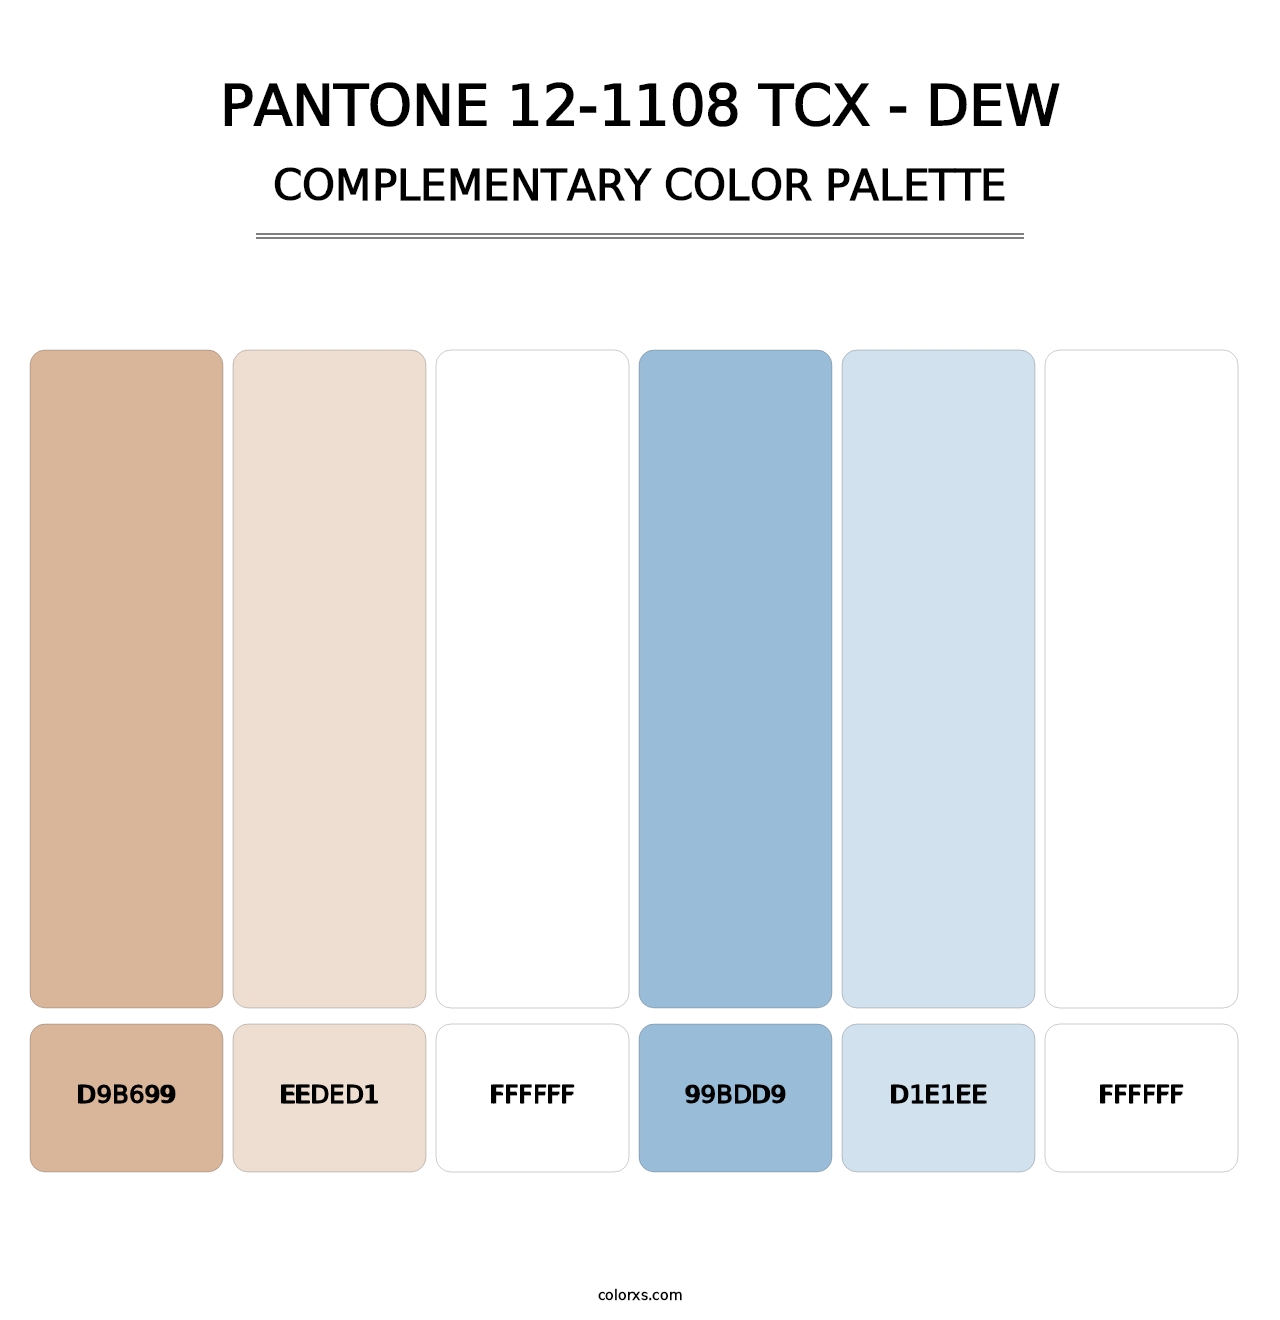 PANTONE 12-1108 TCX - Dew - Complementary Color Palette